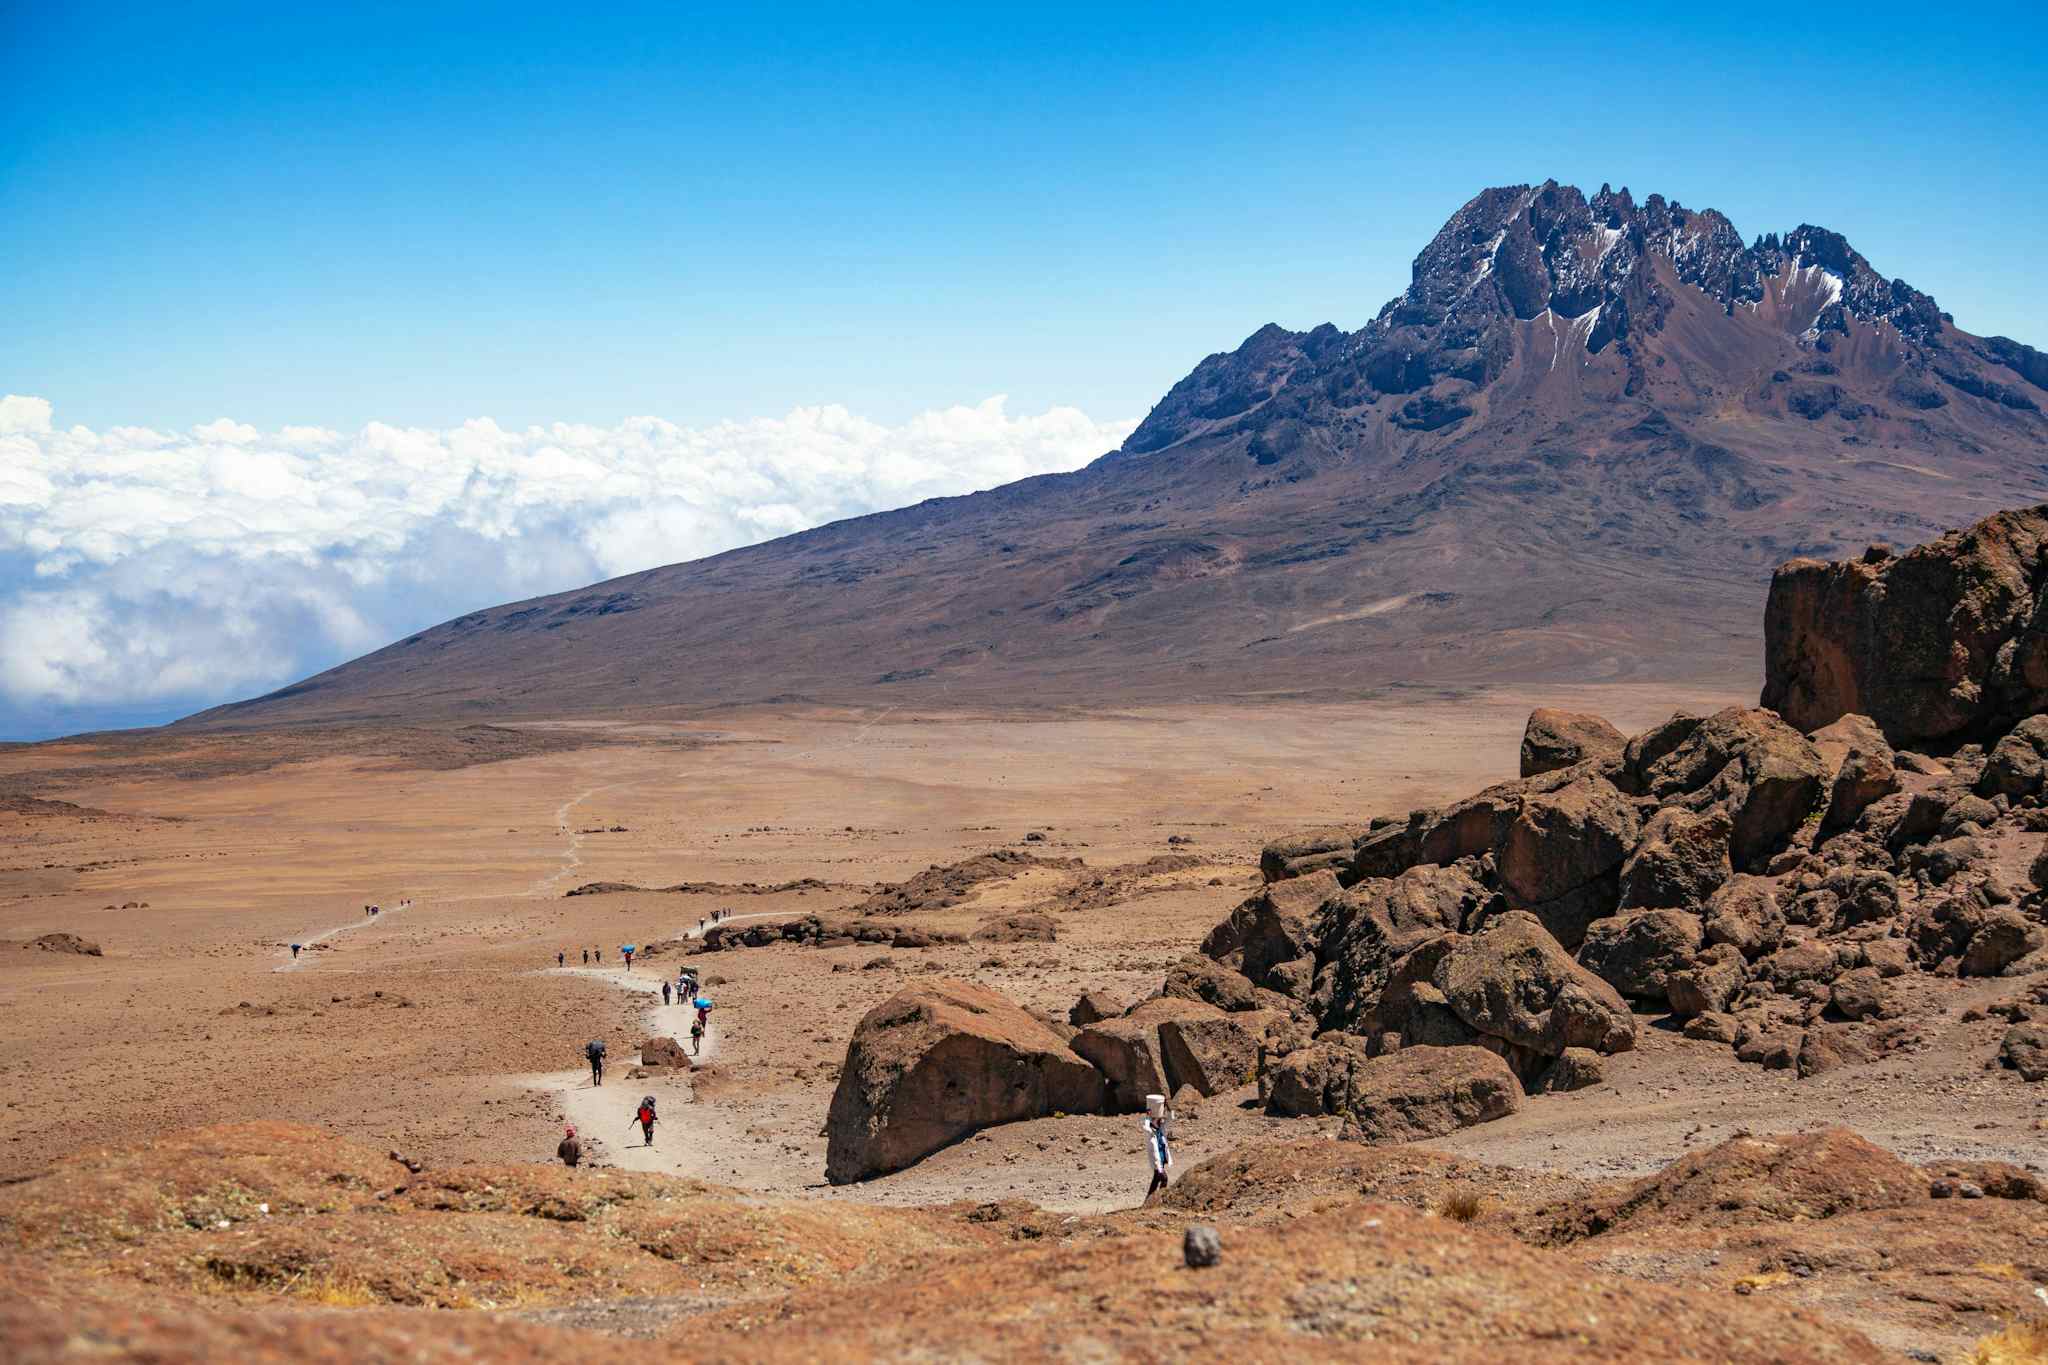 View of hikers approaching Mawenzi Peak along the Rongai Route, Mount Kilimanjaro, Tanzania.